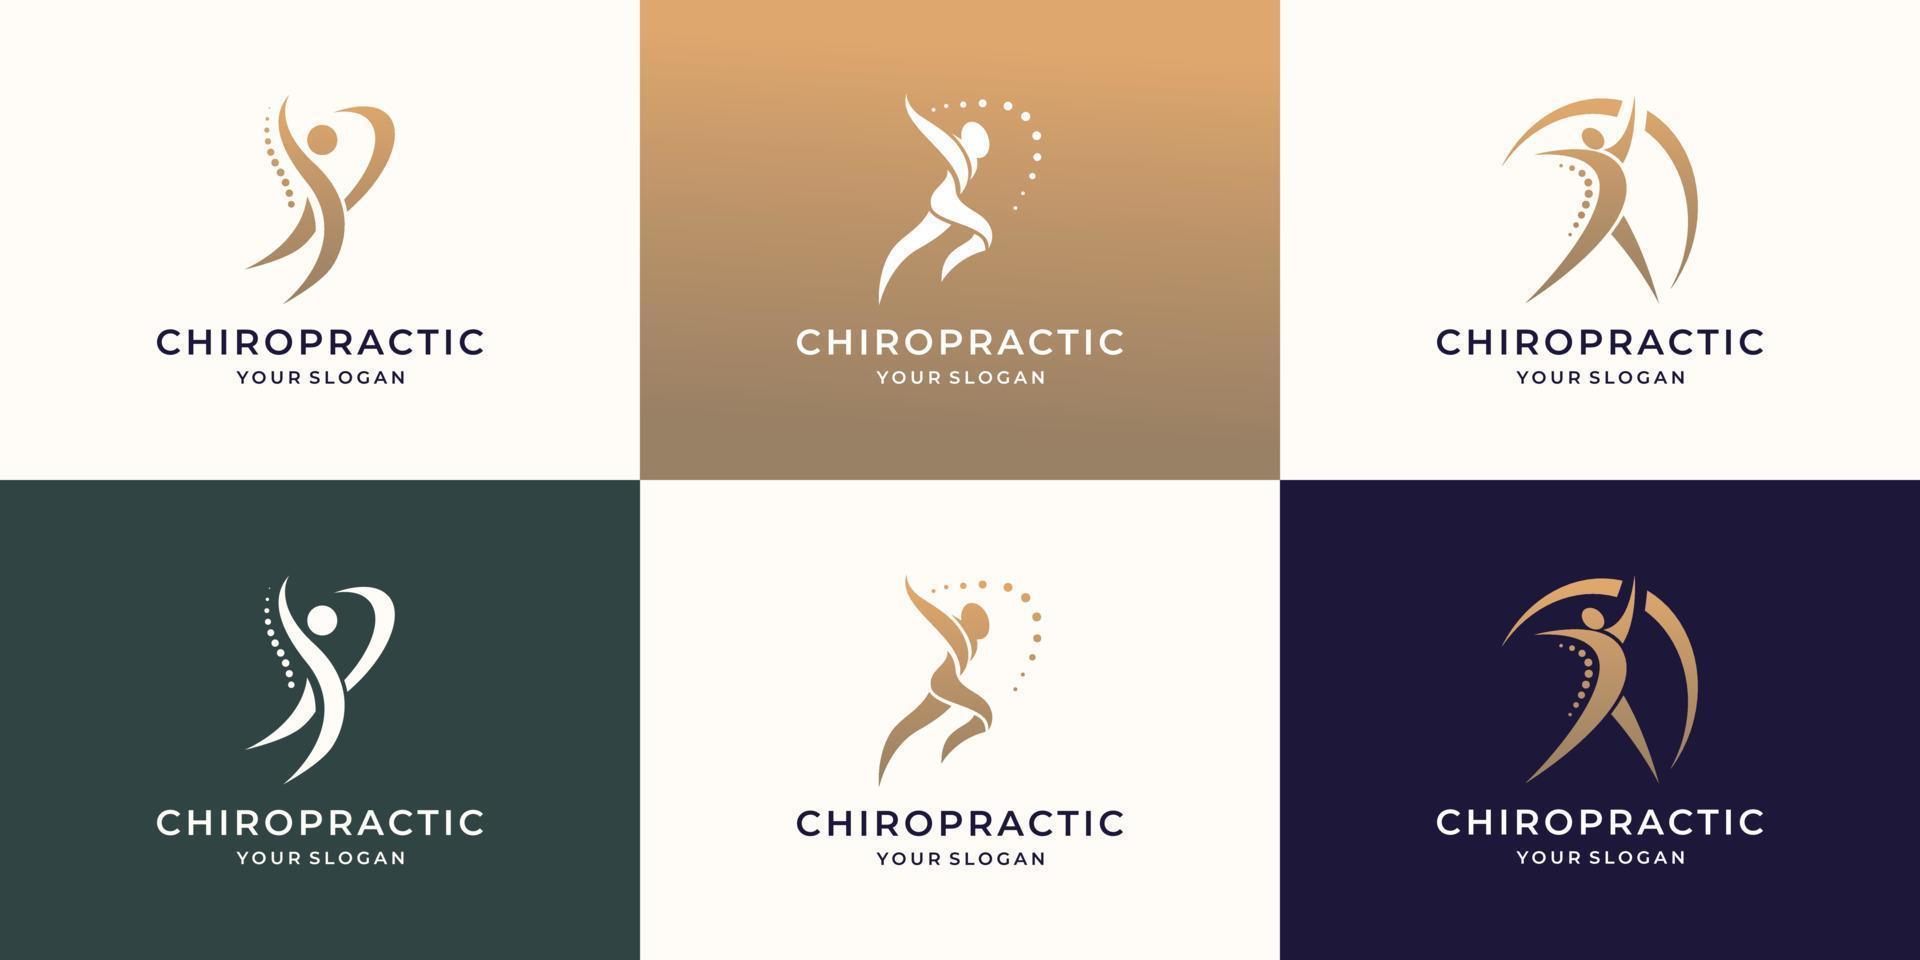 les icônes de chiropratique, de massage, de maux de dos et d'ostéopathie définissent la collection de logos. vecteur